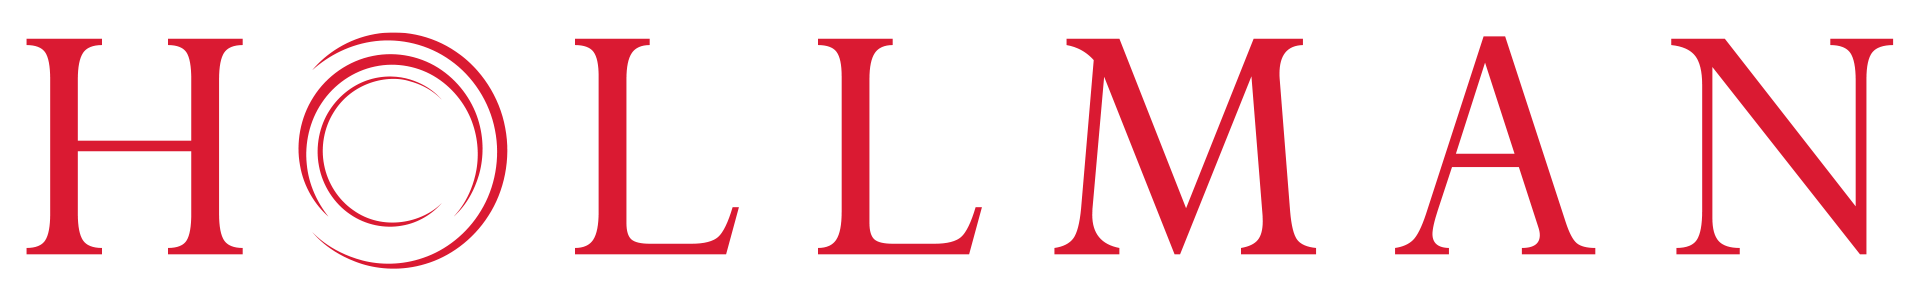 Hollman Logo Red